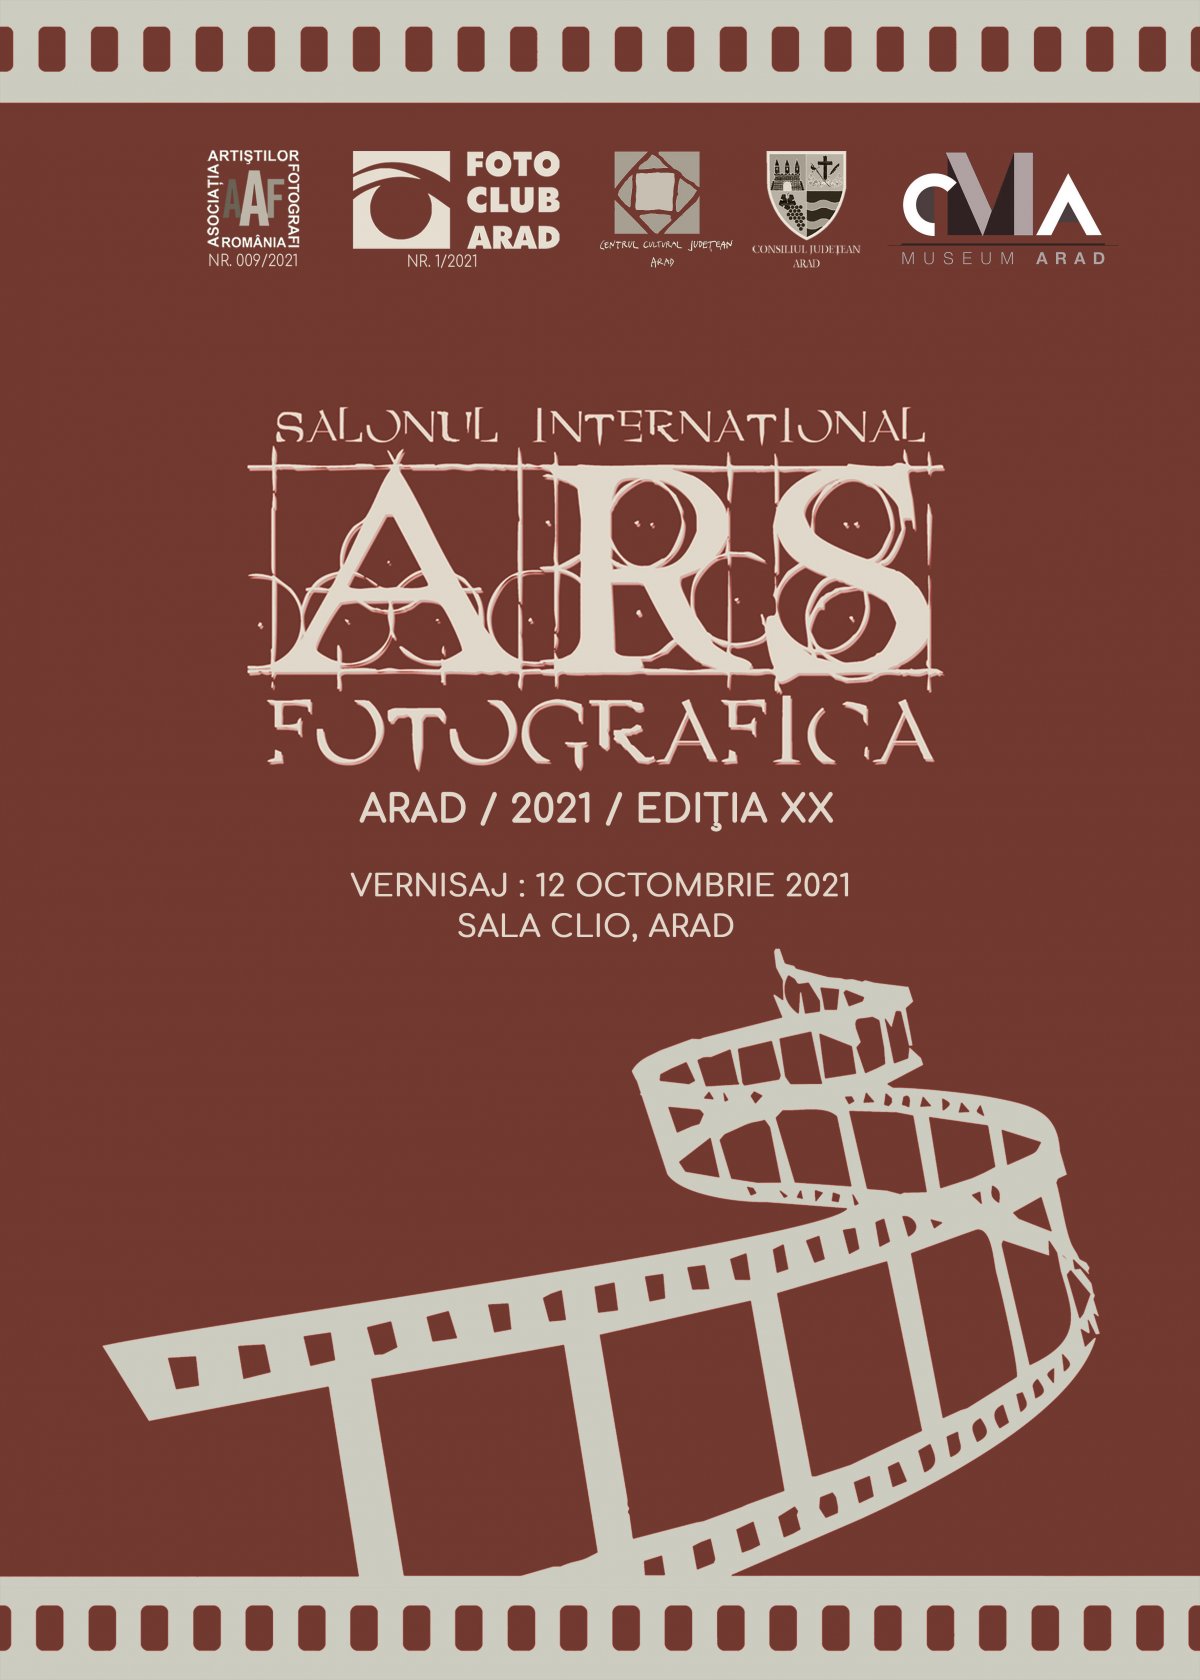 Asociația Foto Club Arad (fondată în 1968) vă invită să participați la Salonul Internațional Ars Fotografica Arad – 2021, Ediția a XXI-a